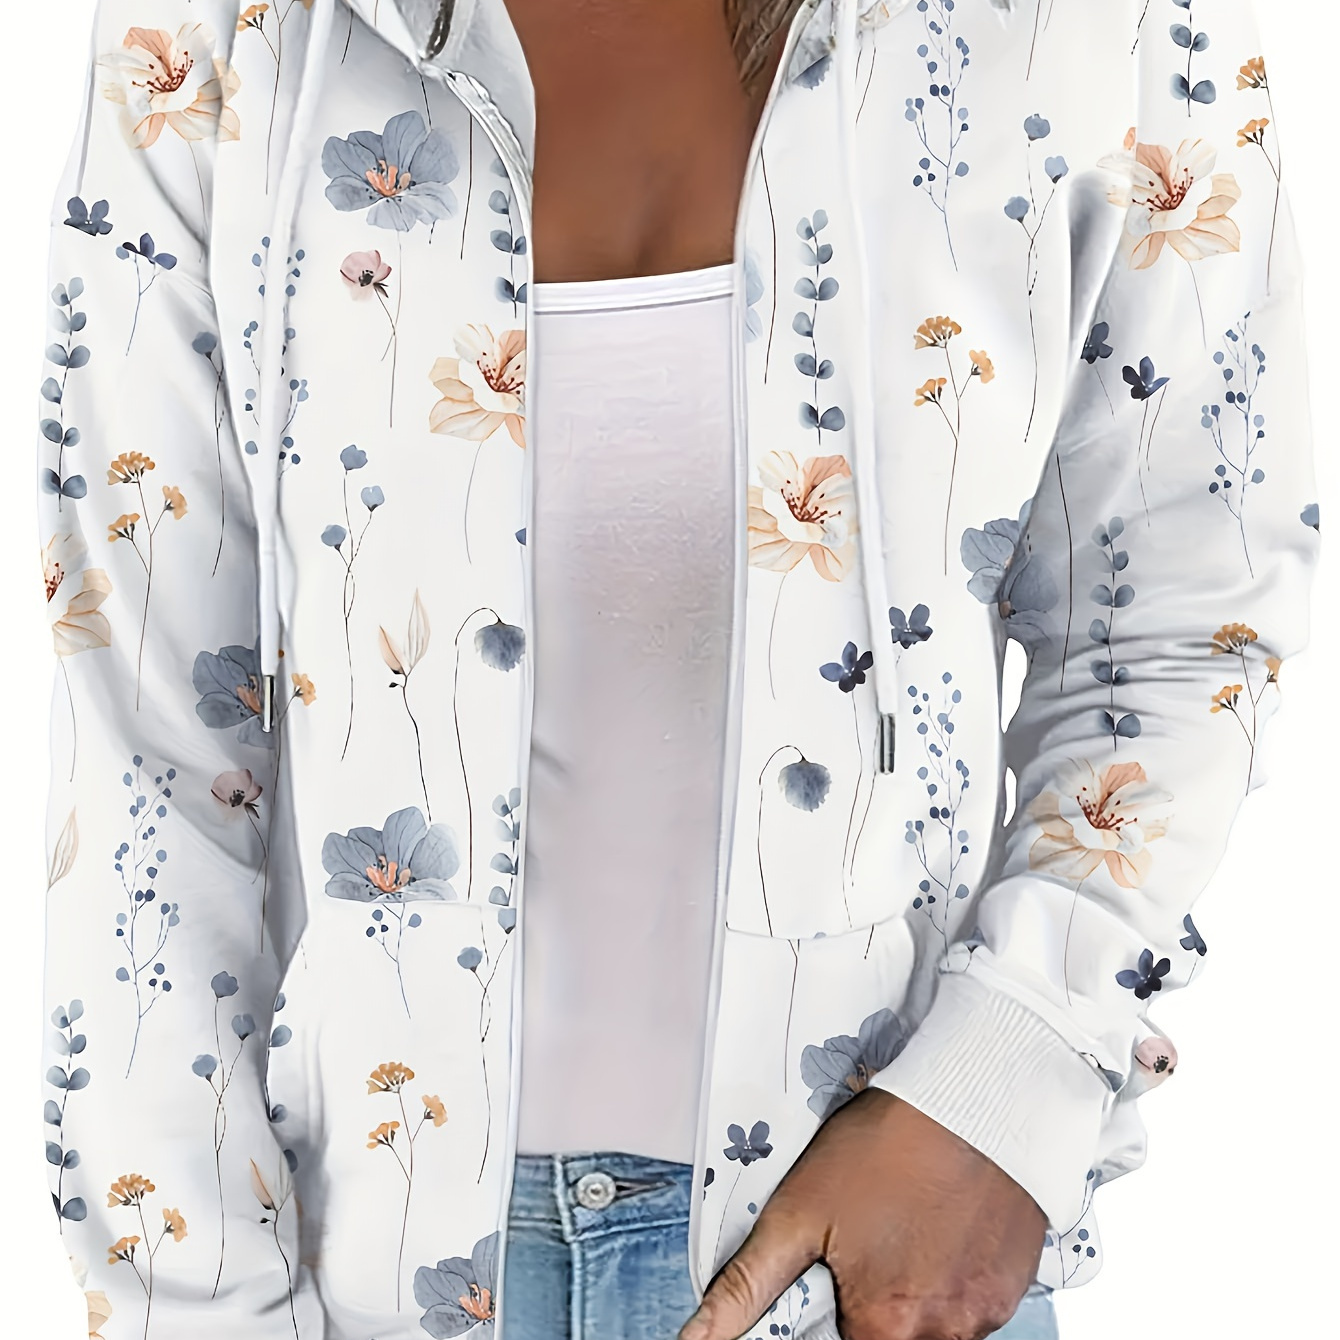 

Floral Print Zip Up Drawstring Hoodie, Casual Long Sleeve Pocket Sweatshirt, Women's Clothing